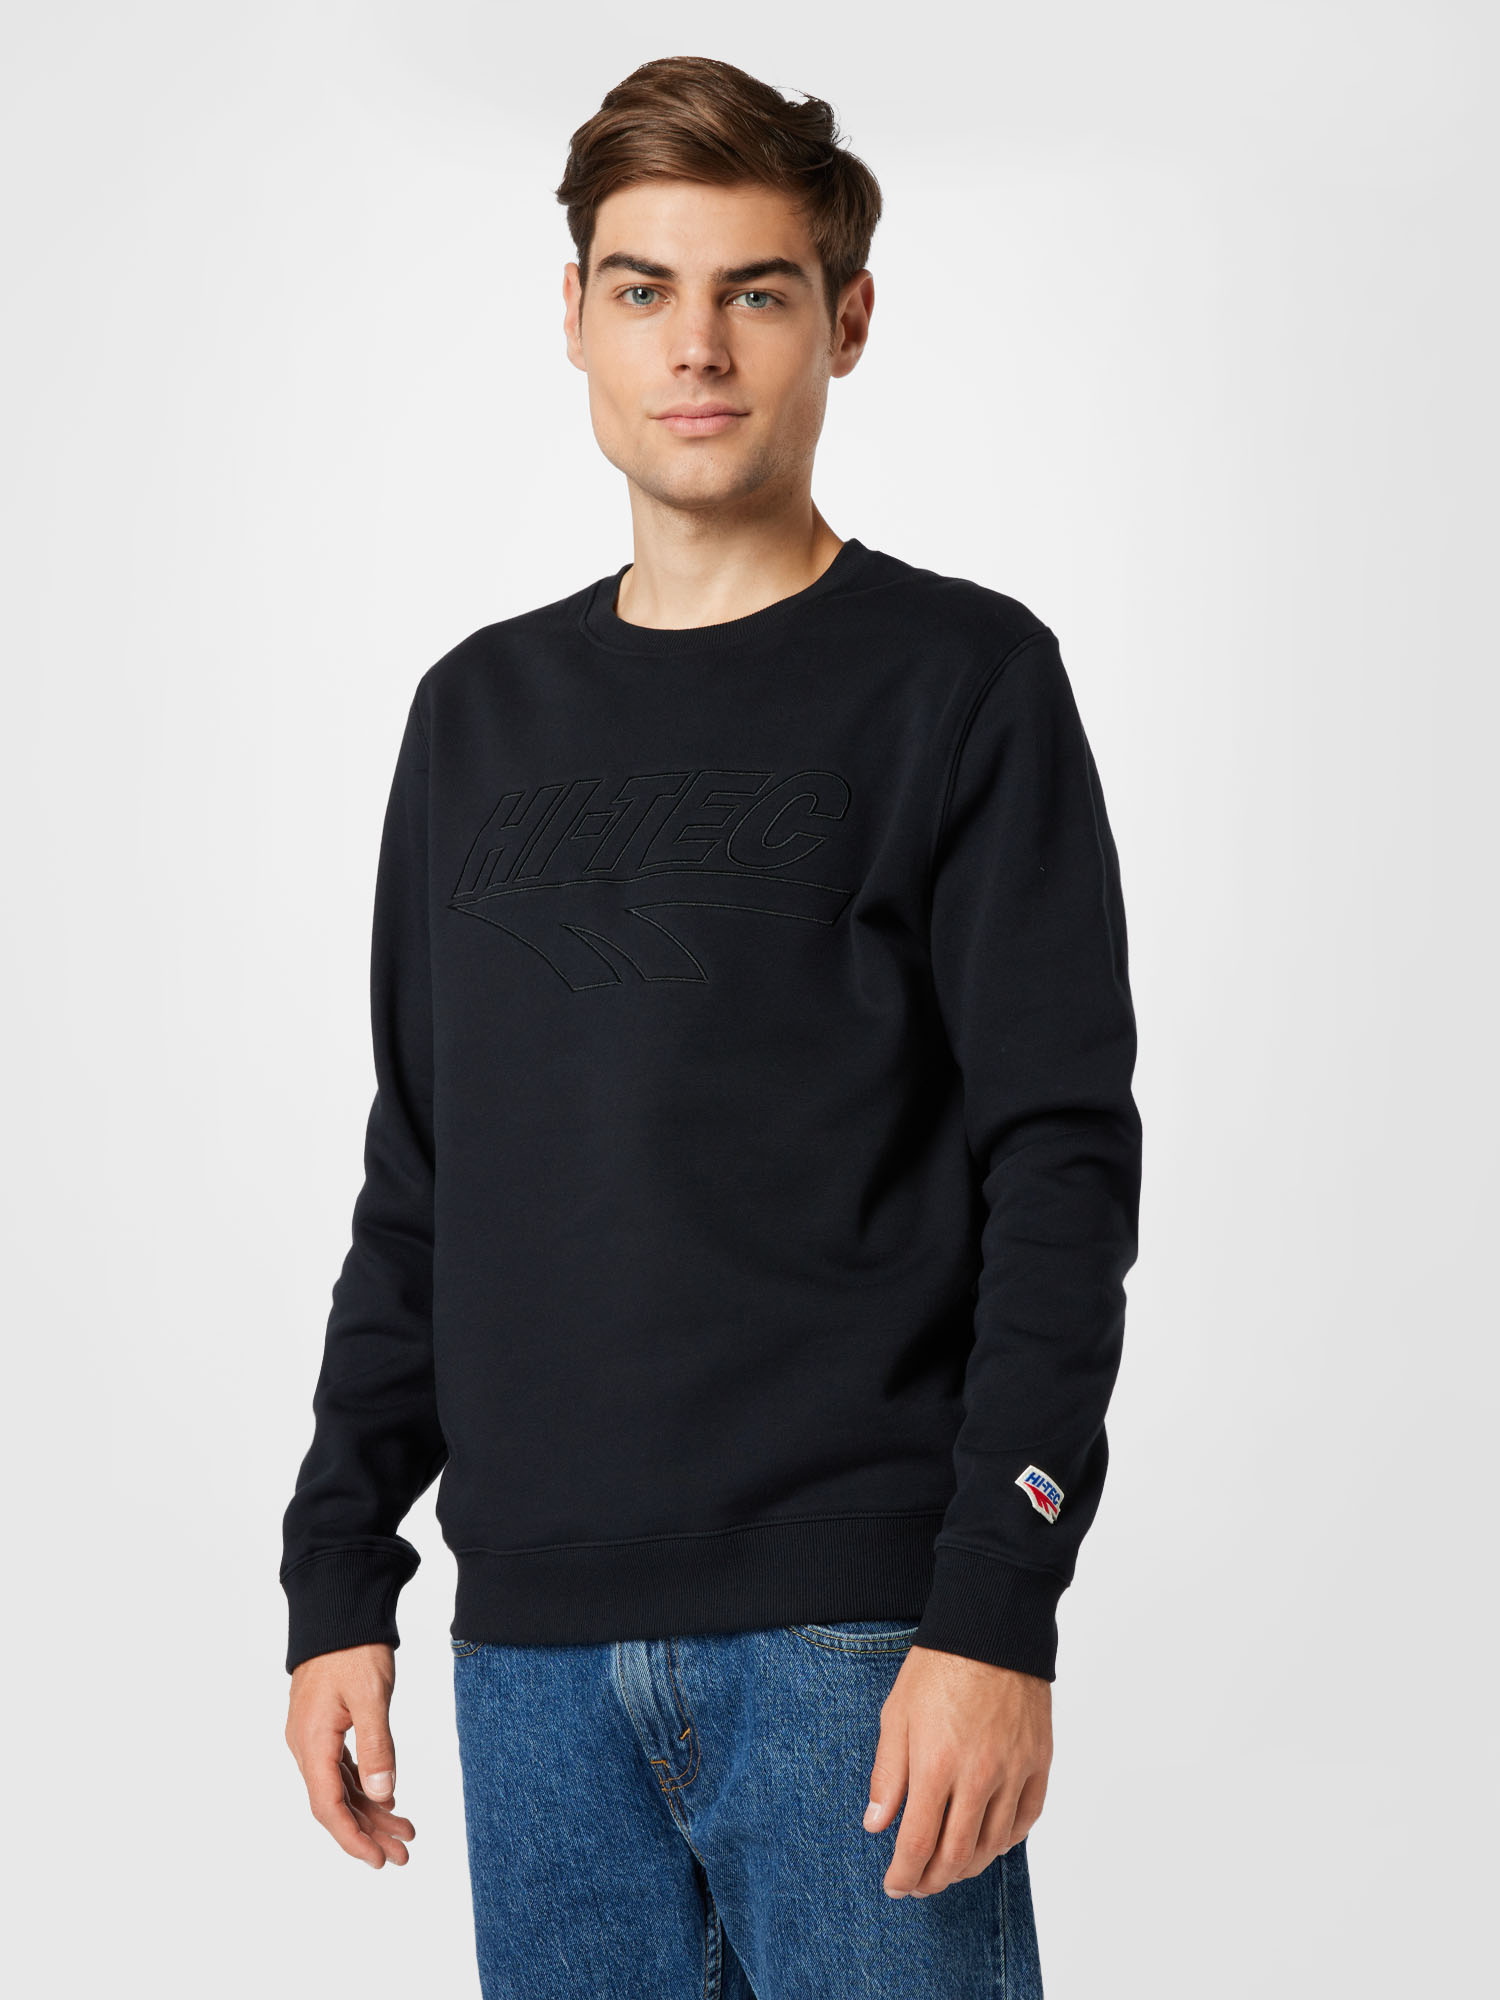 HI-TEC Sweatshirt PINSKI in Schwarz 